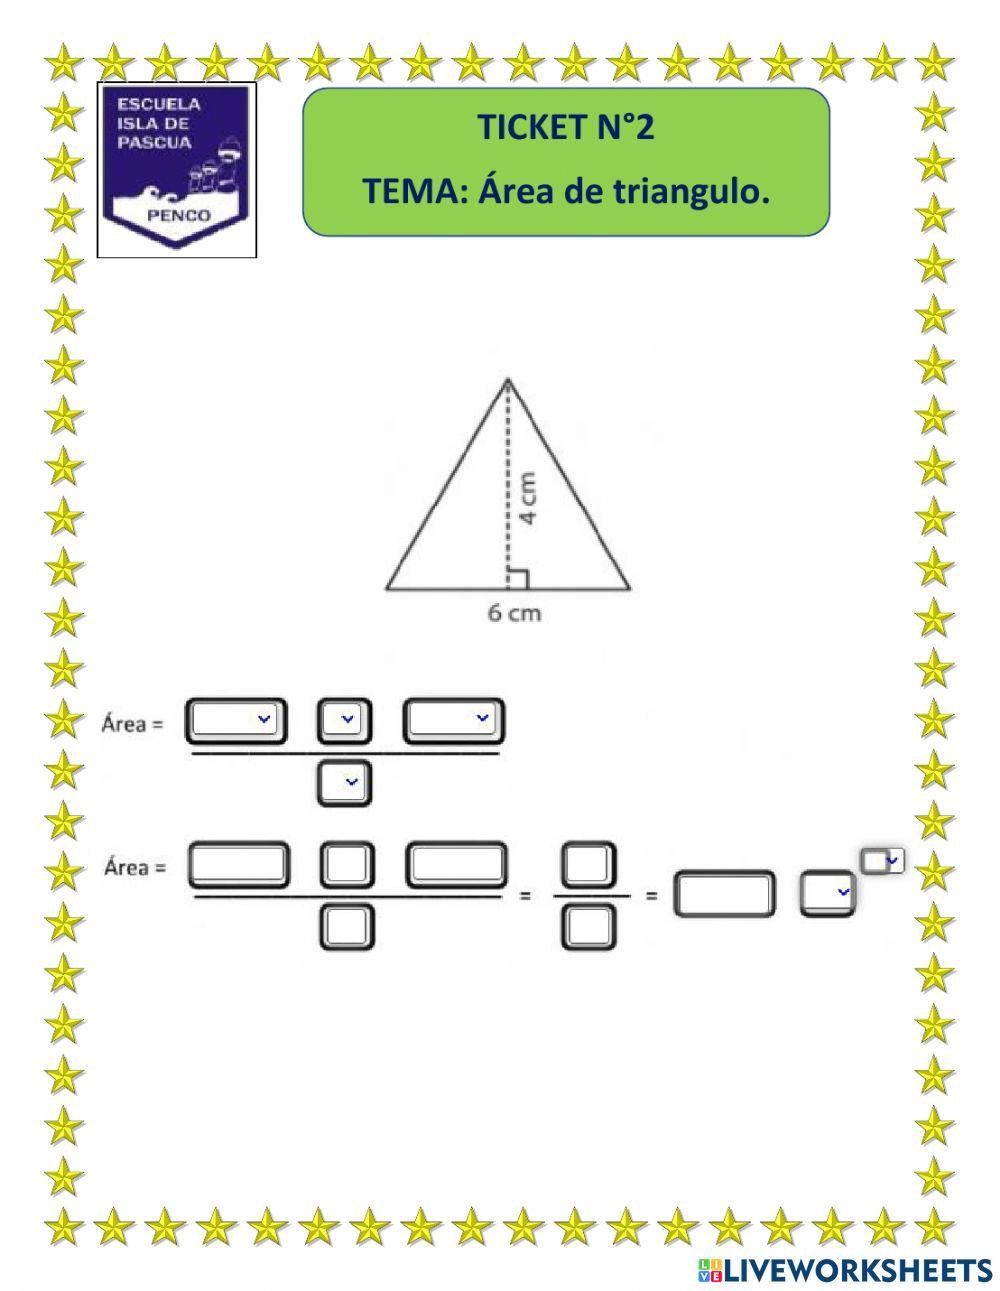 Area de triangulo